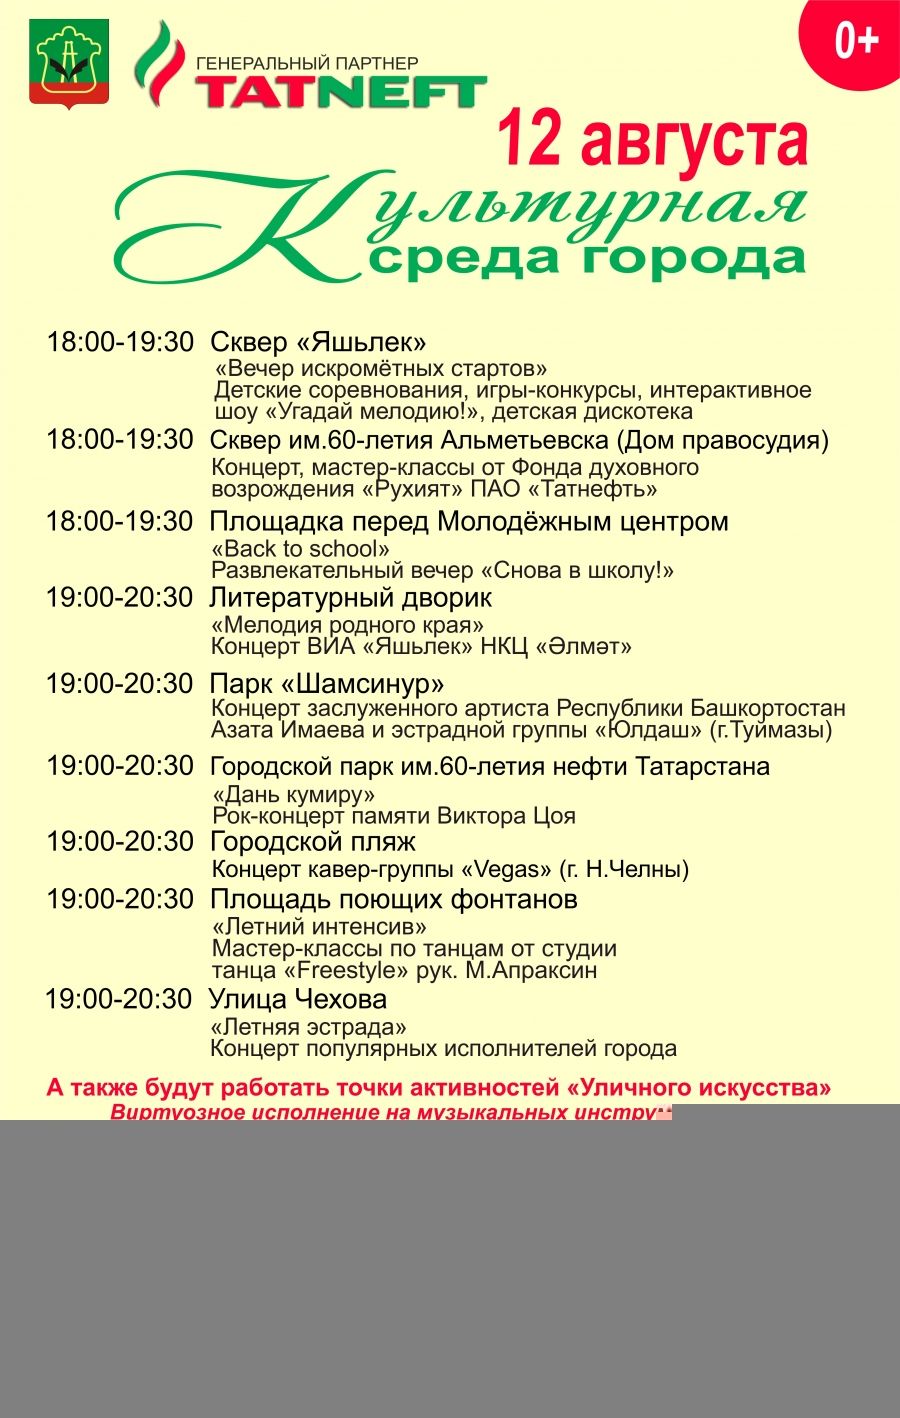 "Культурная среда города" приглашает 12 августа жителей и гостей Альметьевска